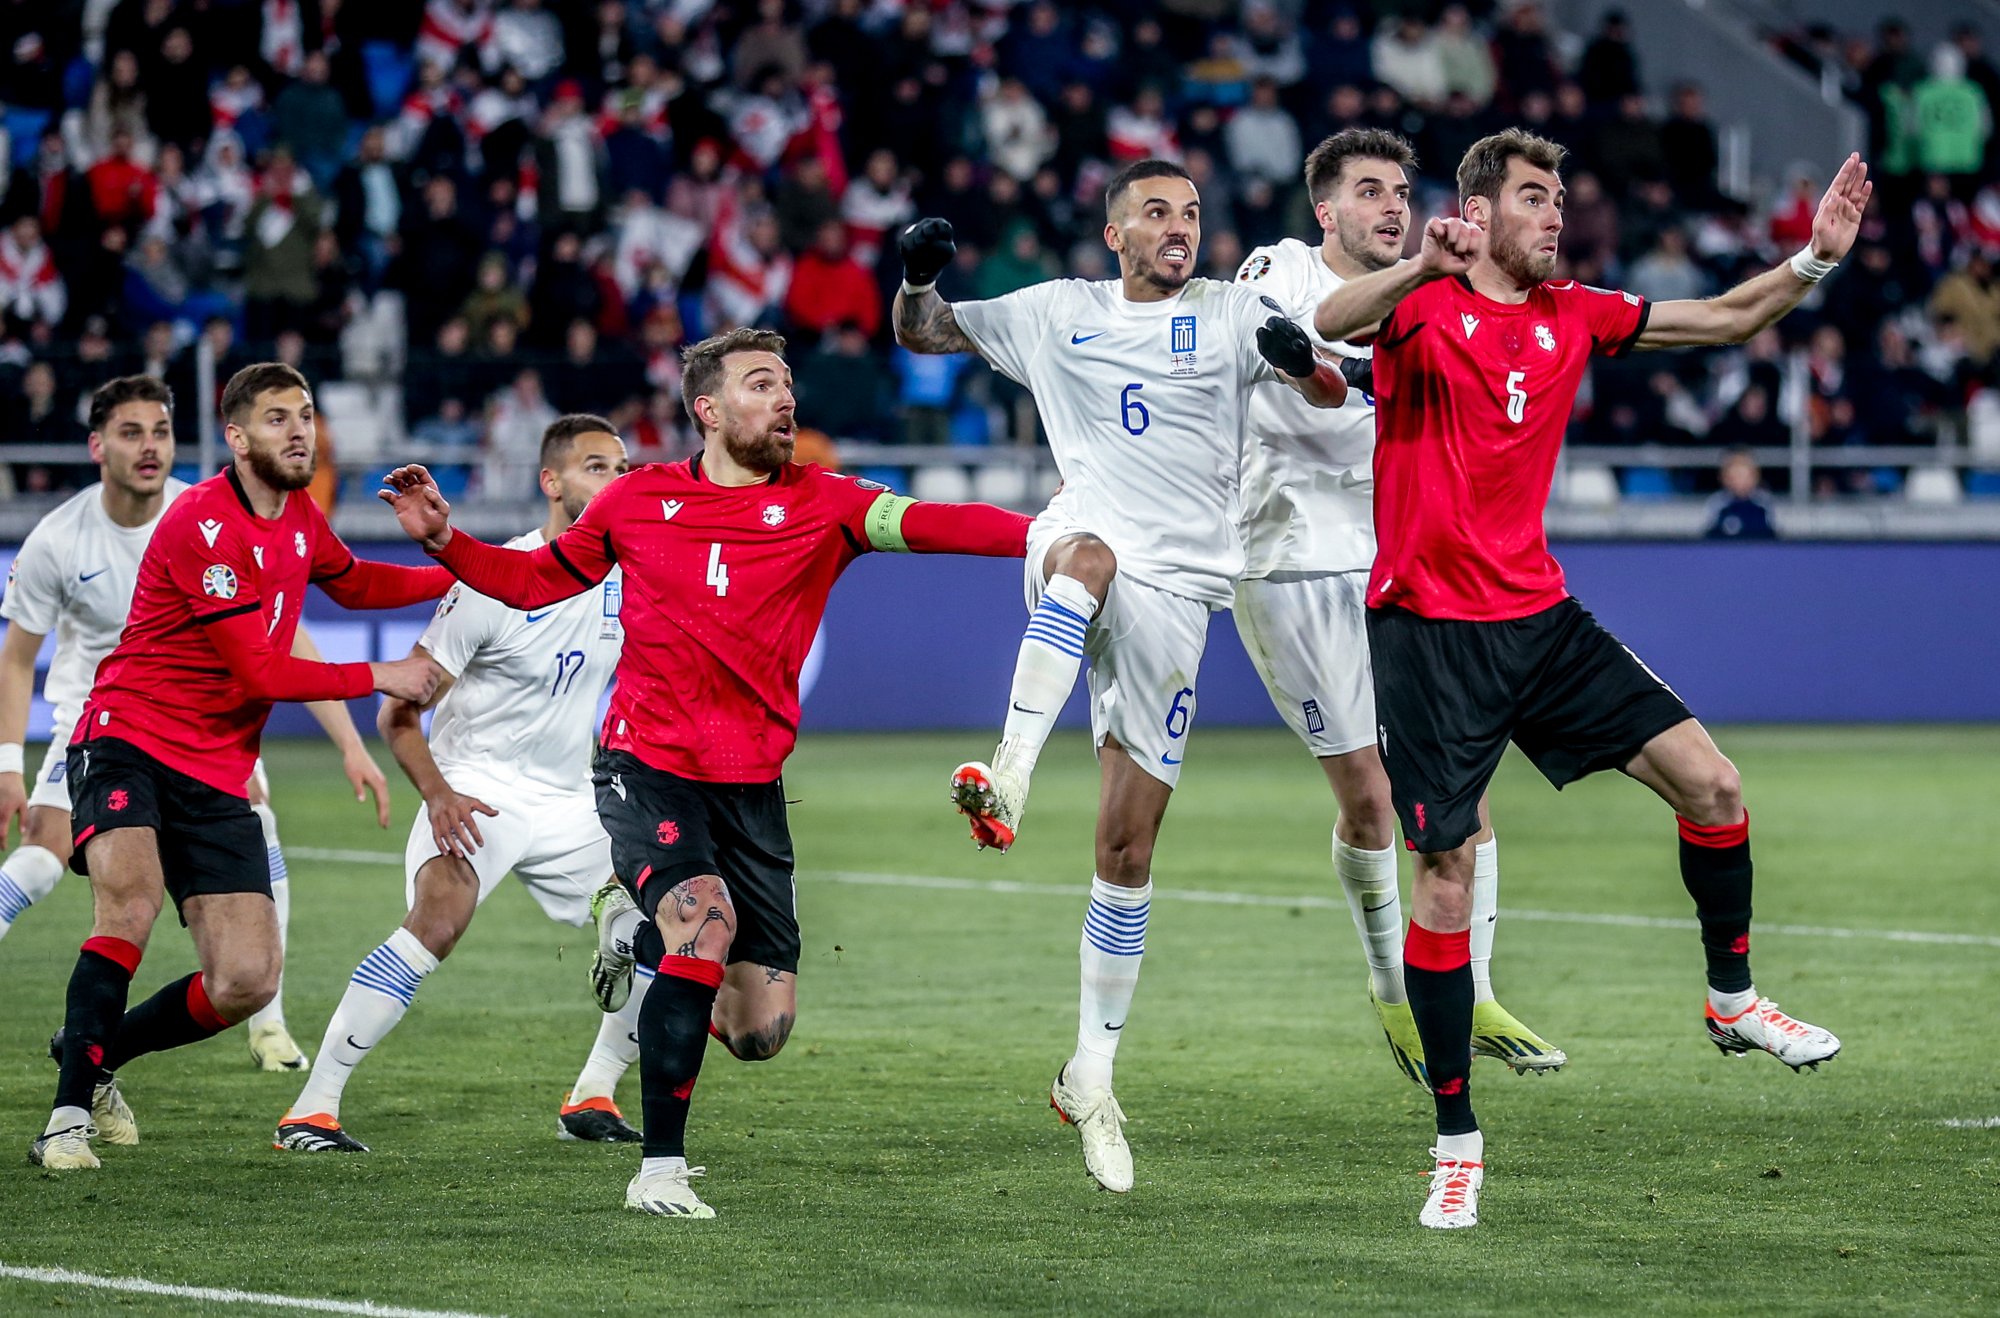 Γεωργία – Ελλάδα 4-2 πεν (0-0 κδ, παρ): «Έσβησε» το όνειρο στα πέναλτι - Αποκλείστηκε η Εθνική